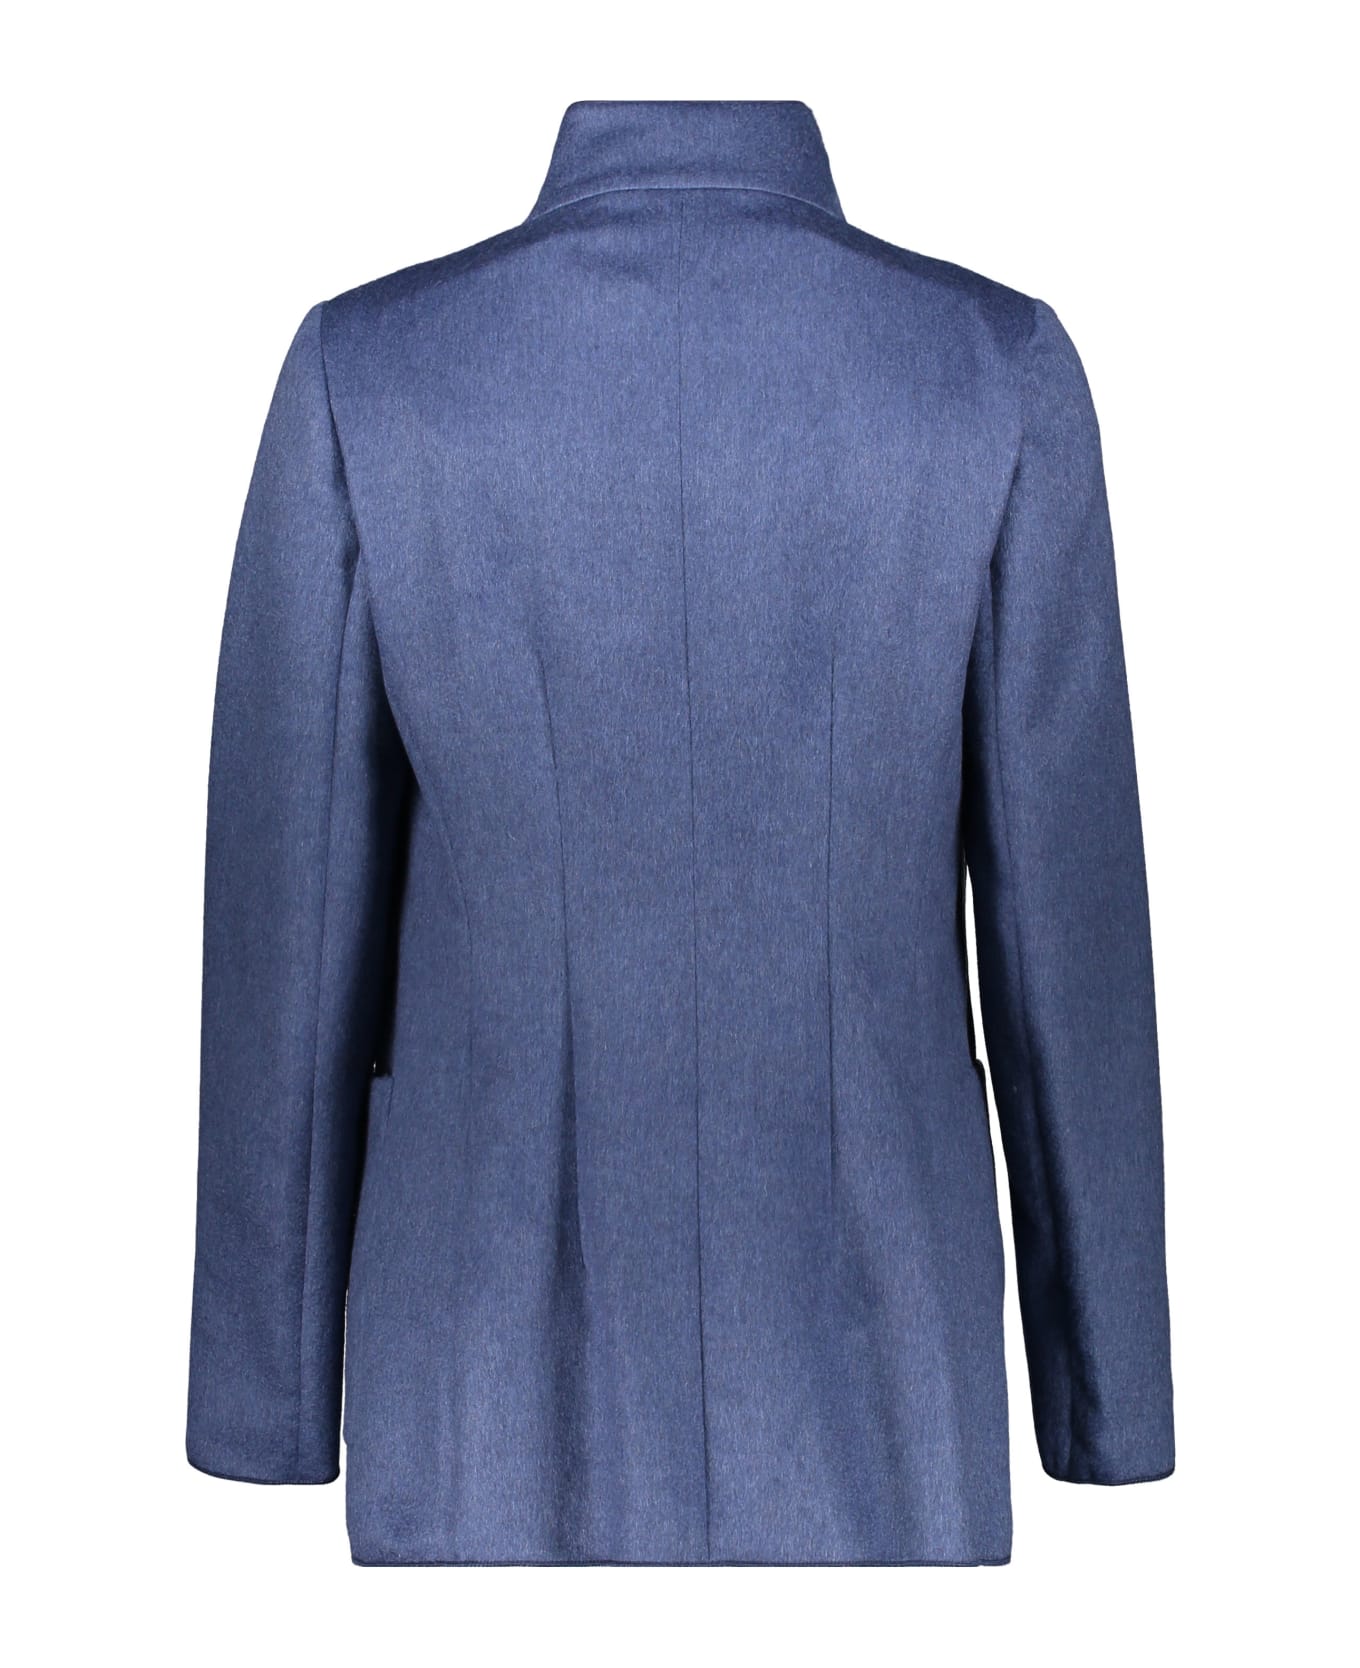 Agnona Cashmere Jacket - blue